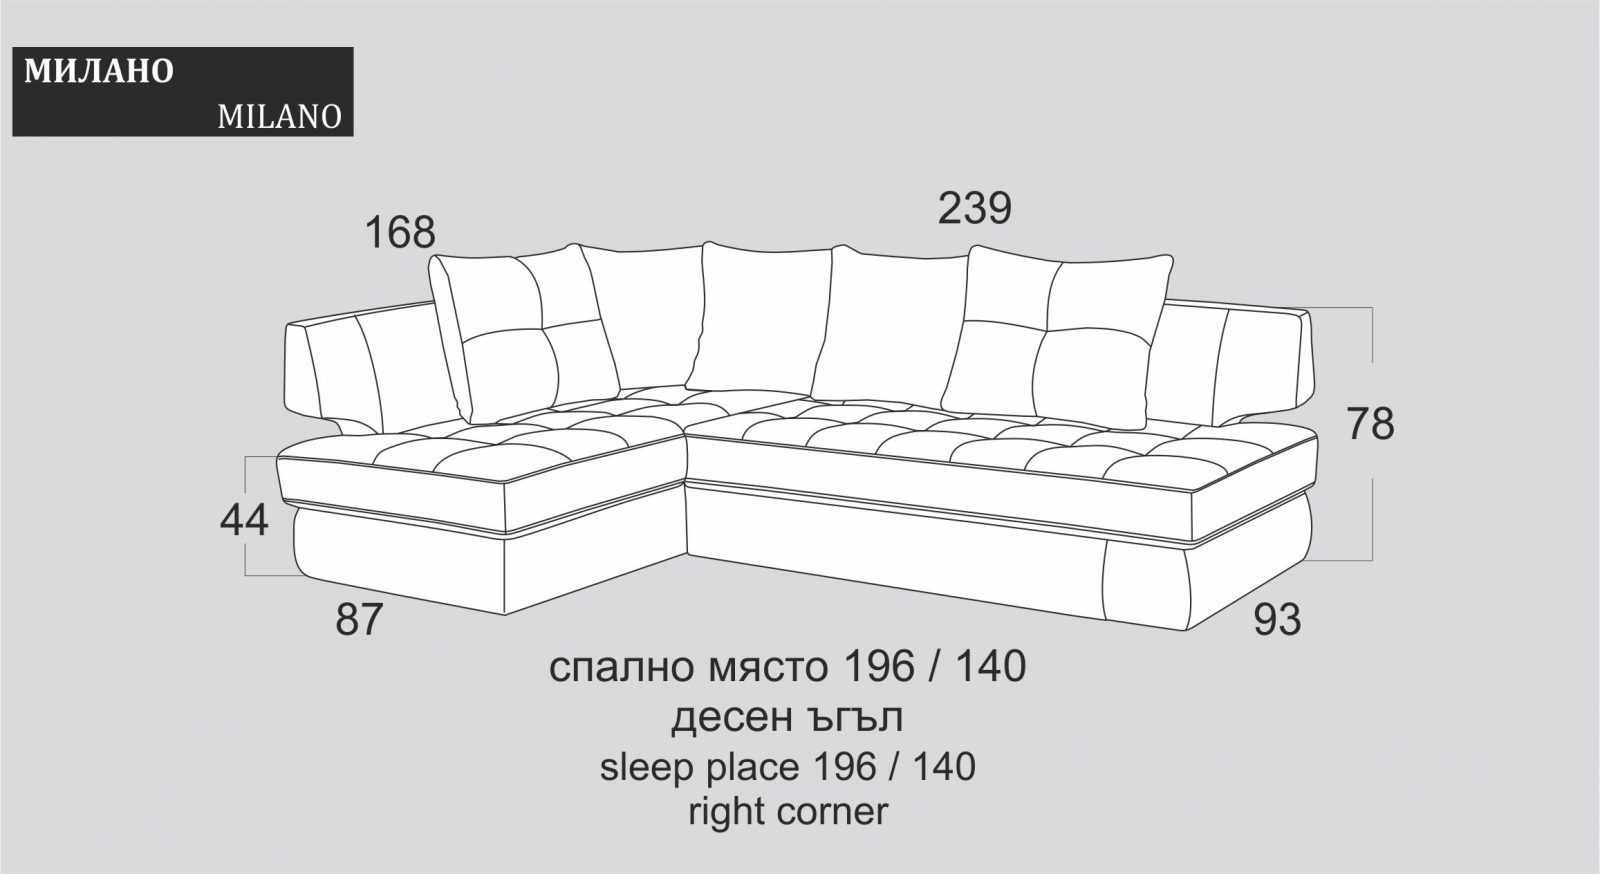 (Български) Разтегателен ъглов диван |»МИЛАНО»| Руди-Ан